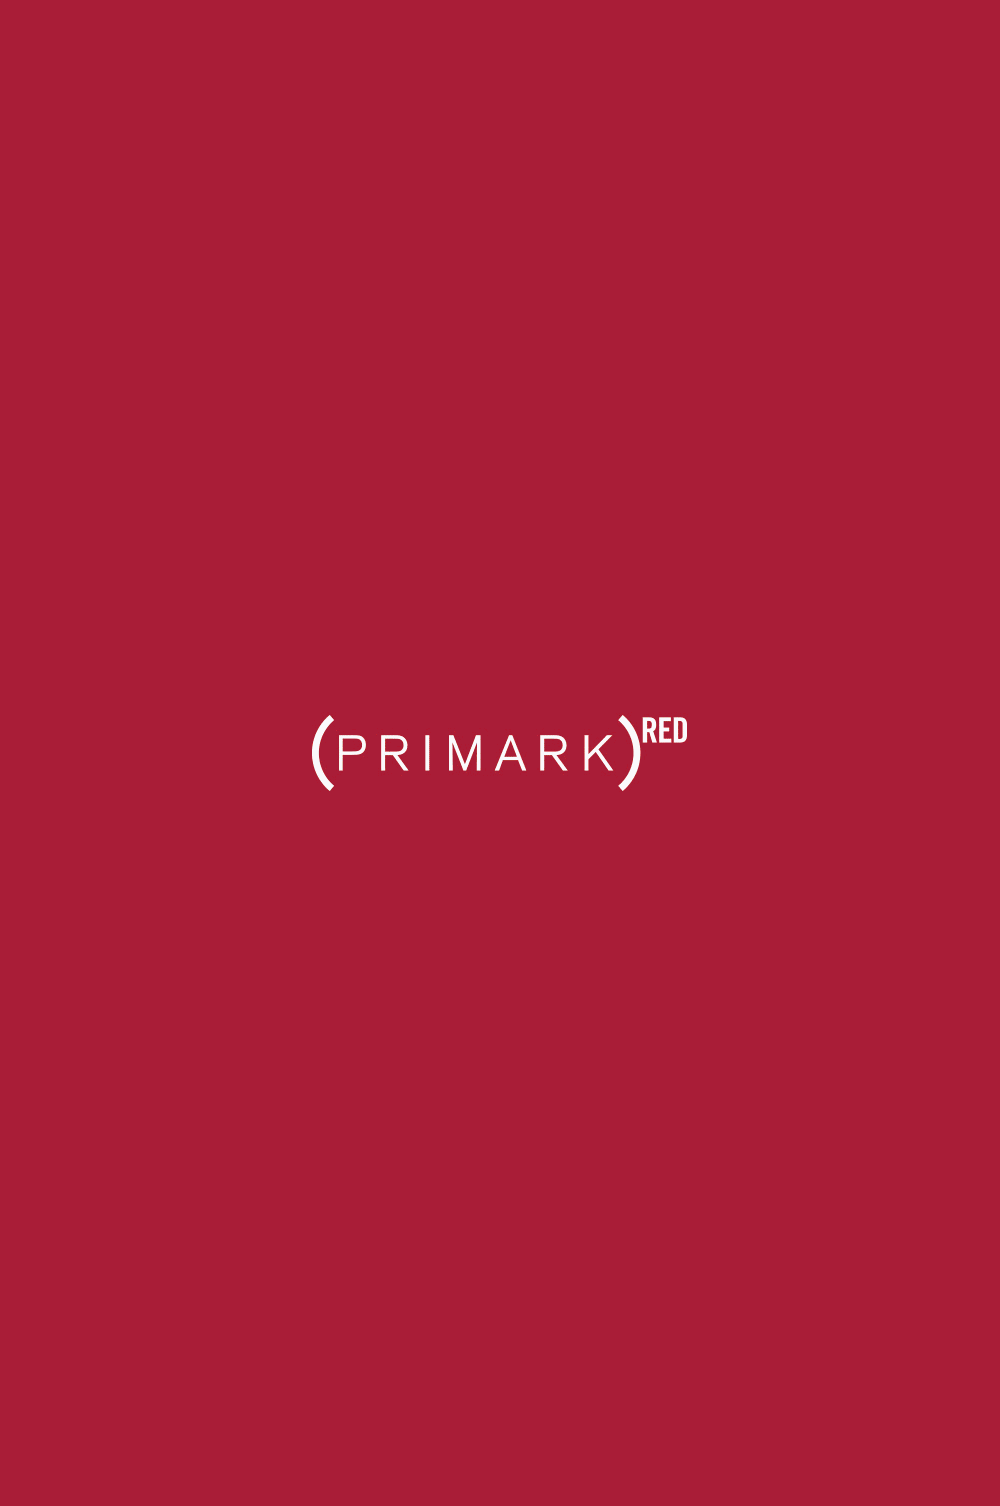 Primark and (RED) Fashion | Primark